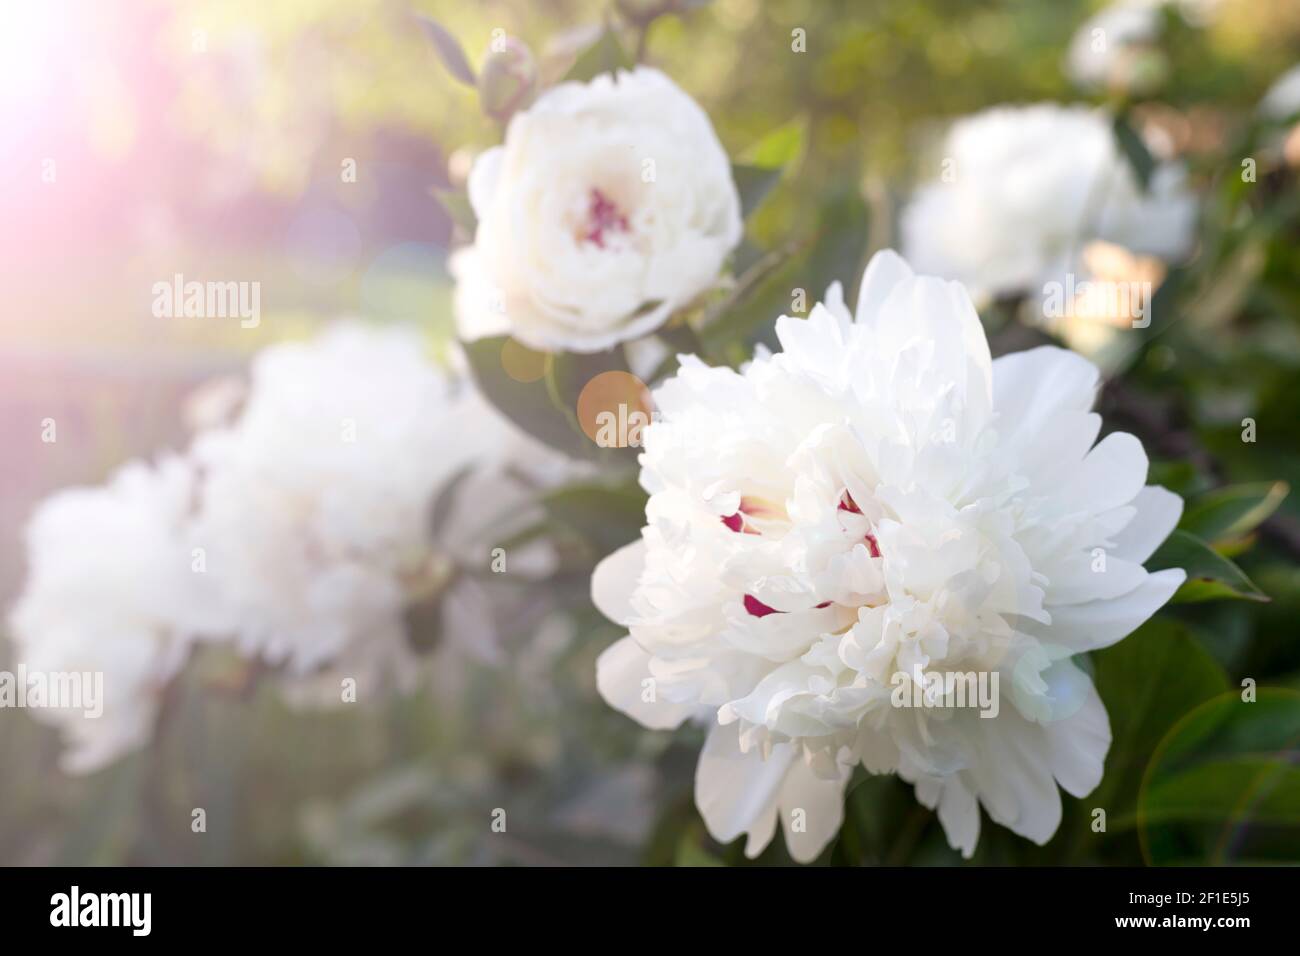 Belle fleur de pivoine blanche. Gros plan. Fond floral pour carte postale, lettrage, peinture, carte de mariage, bannière, fleuriste Banque D'Images